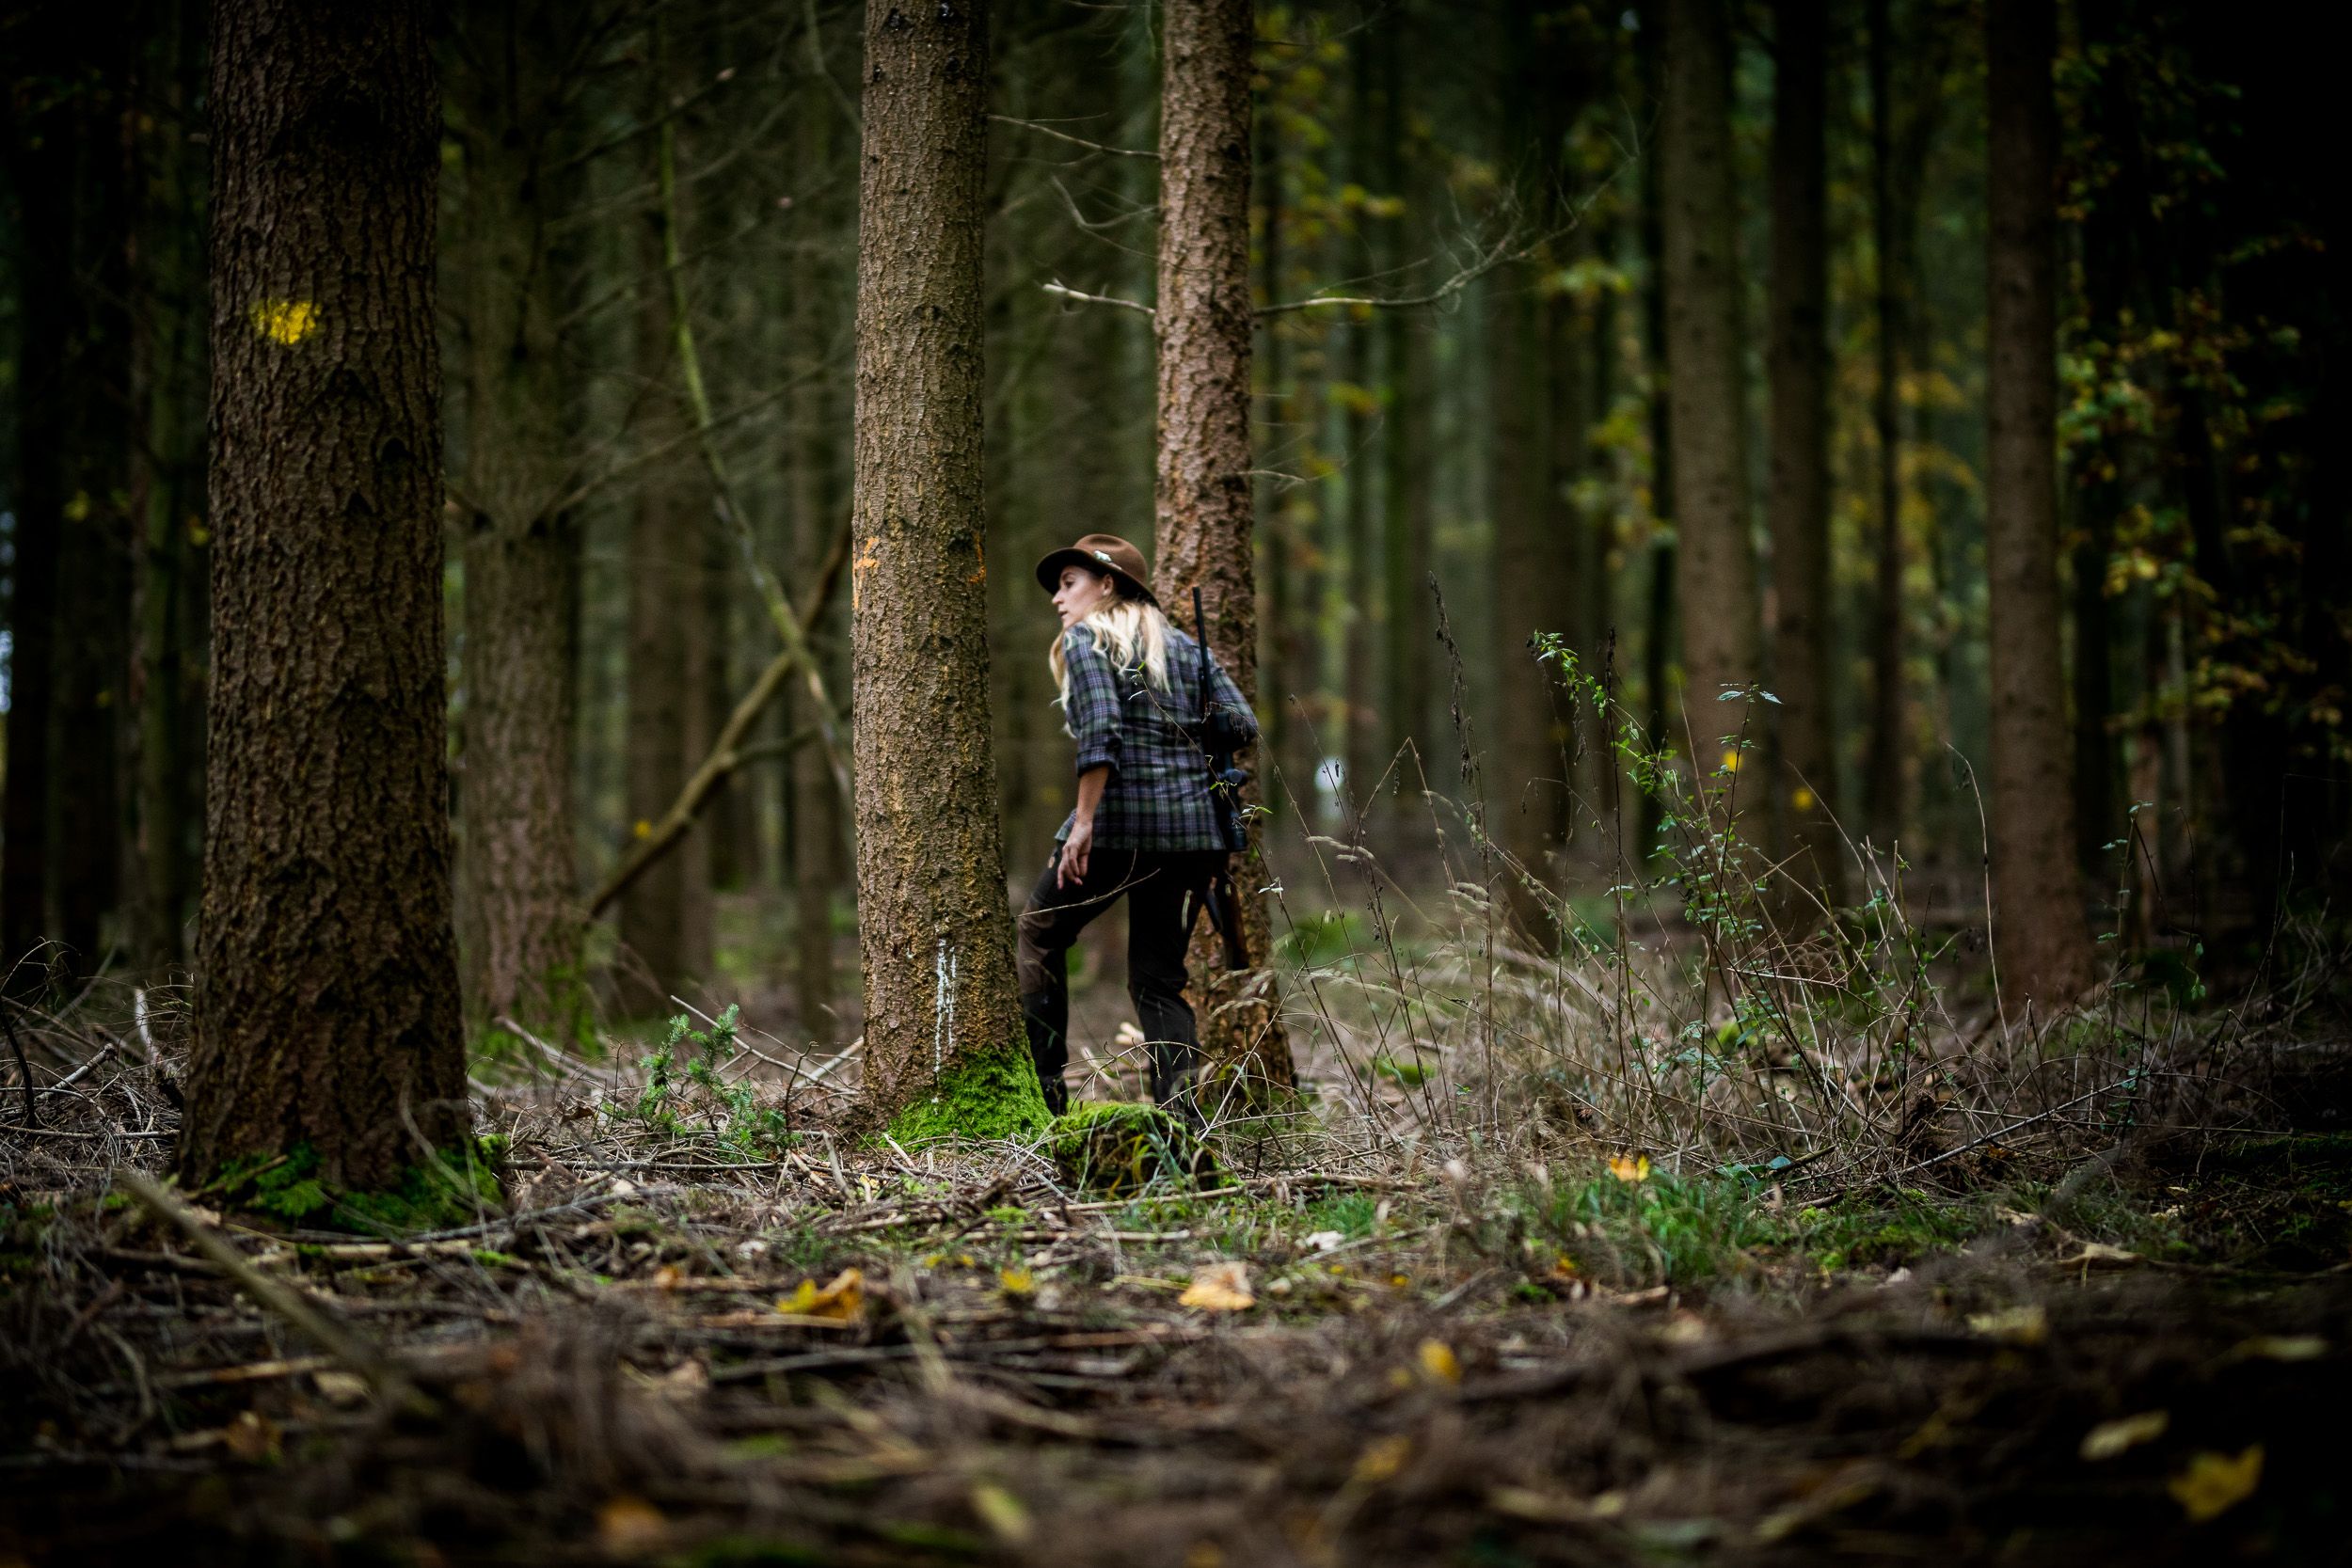 Fotoreportage einer Jägerin im Wald in Bayern bei Würzburg